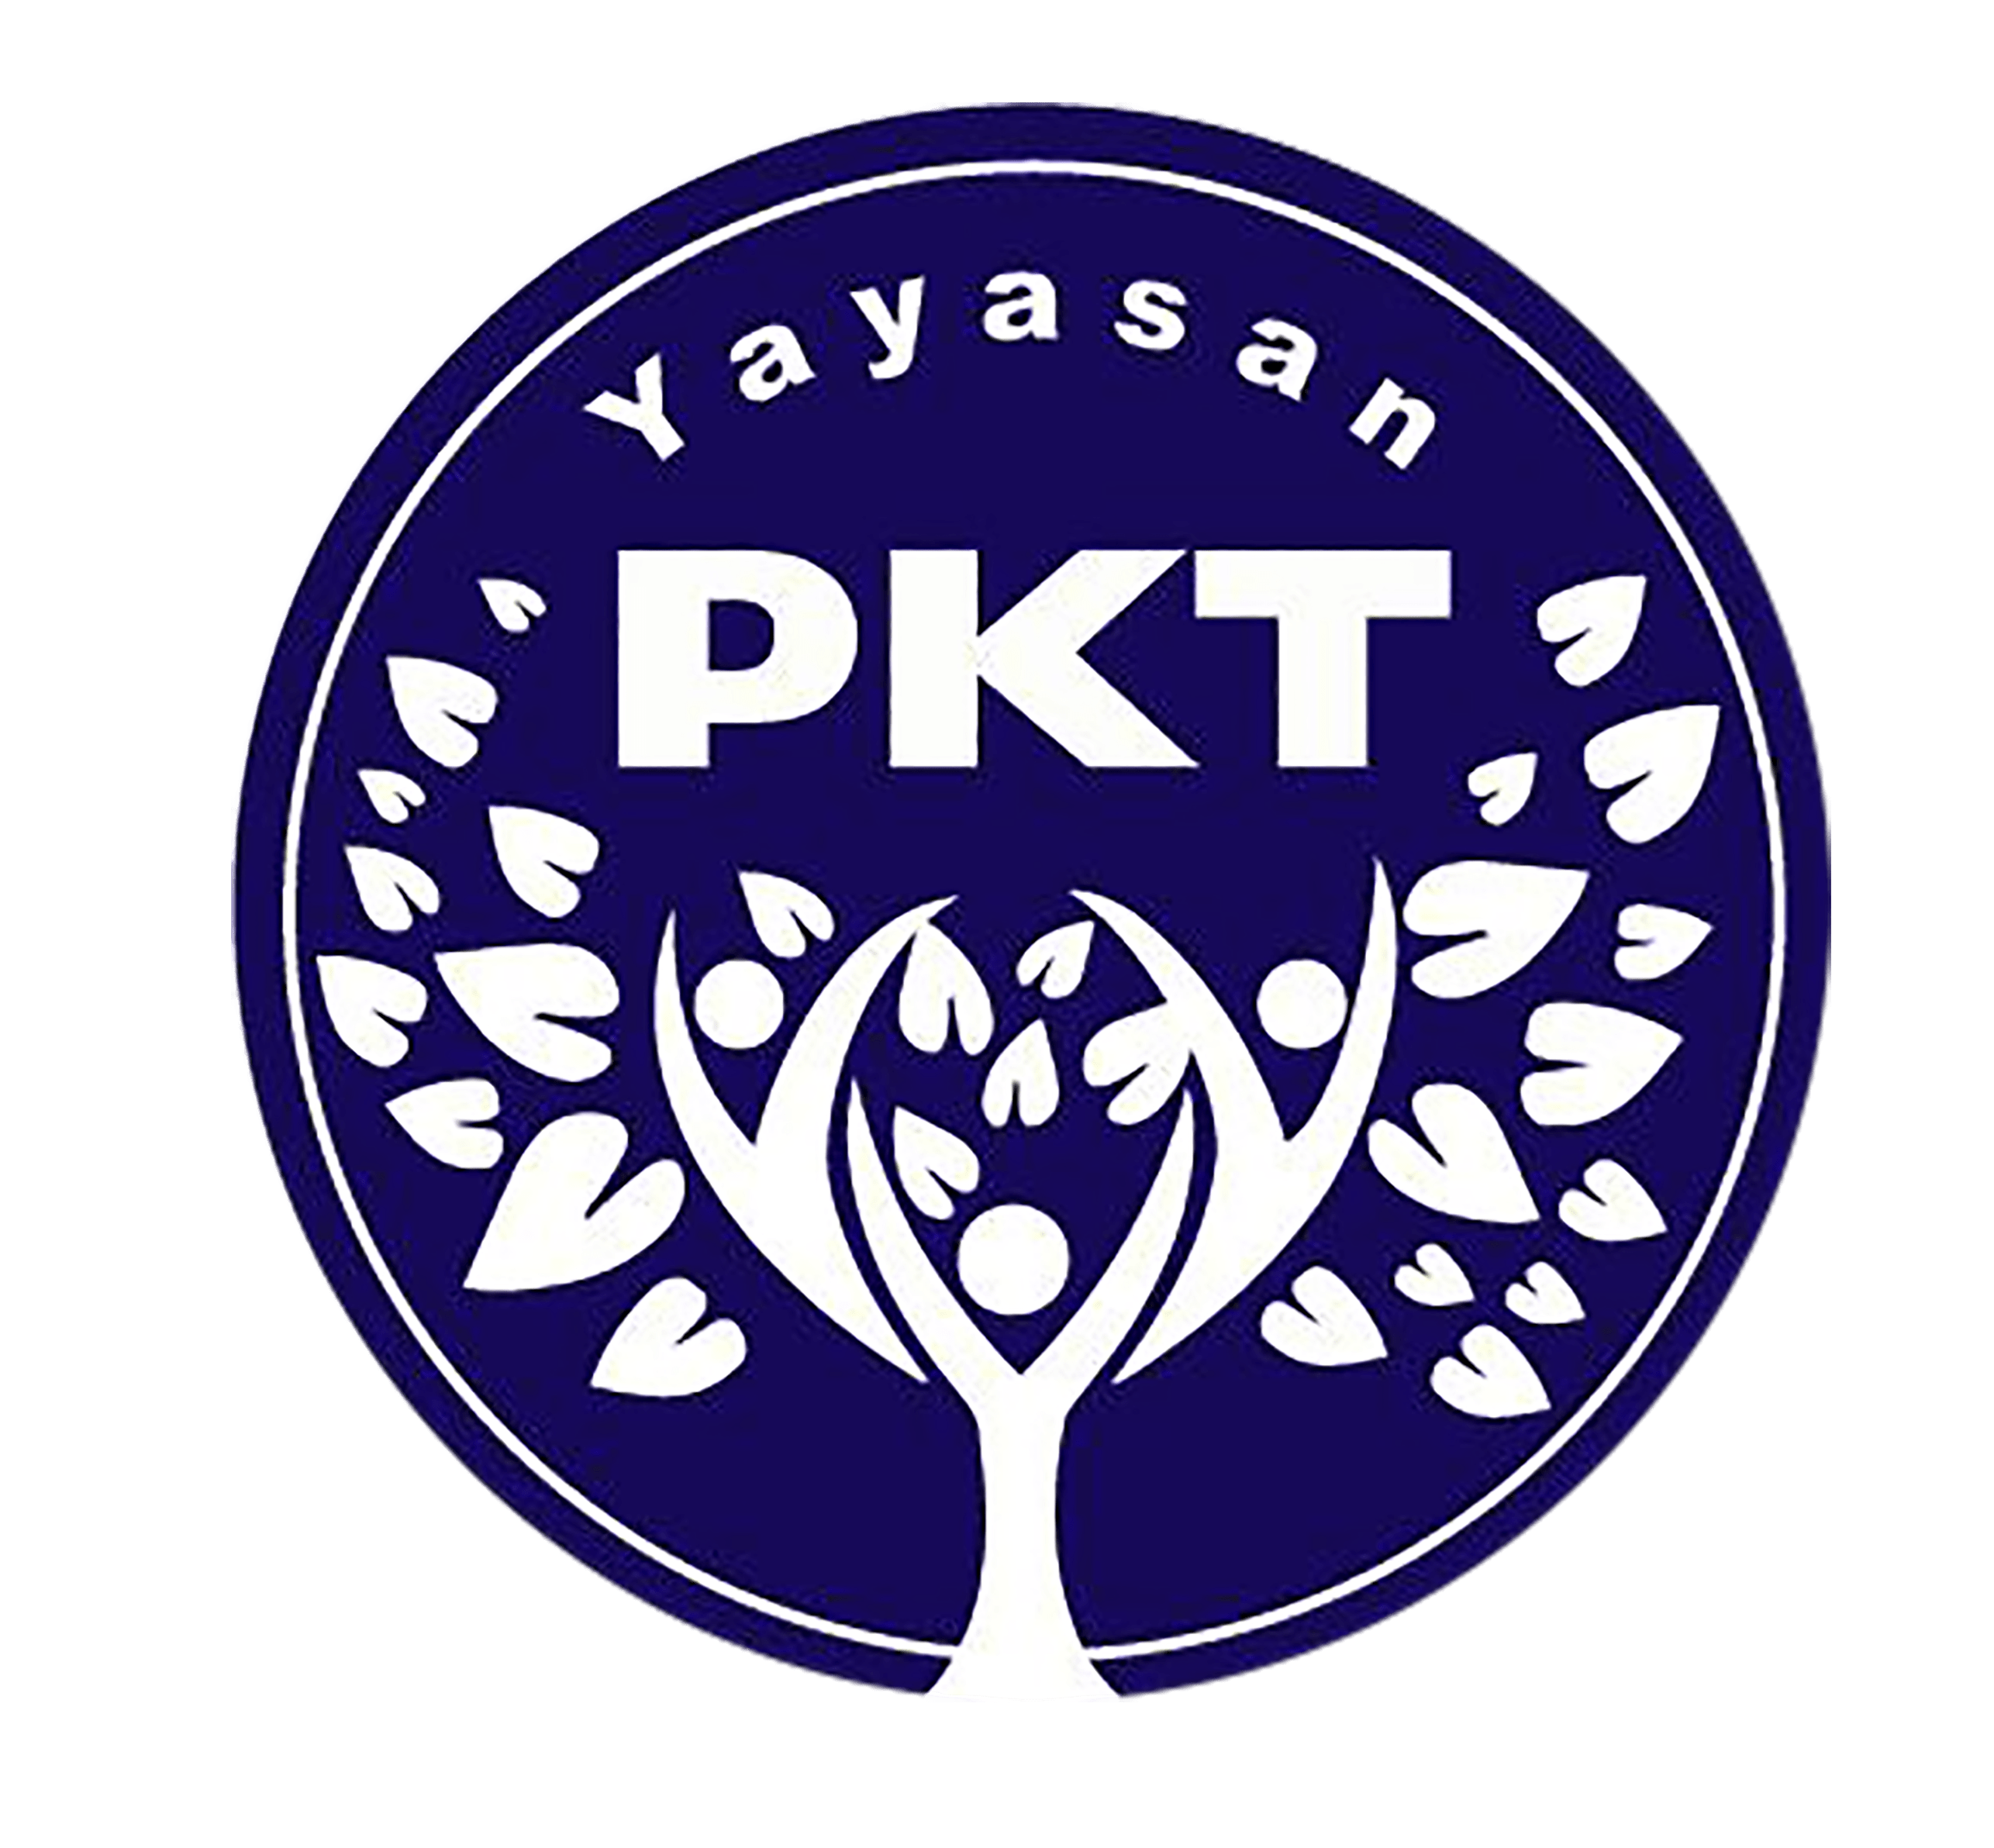 yayasan pkt logo